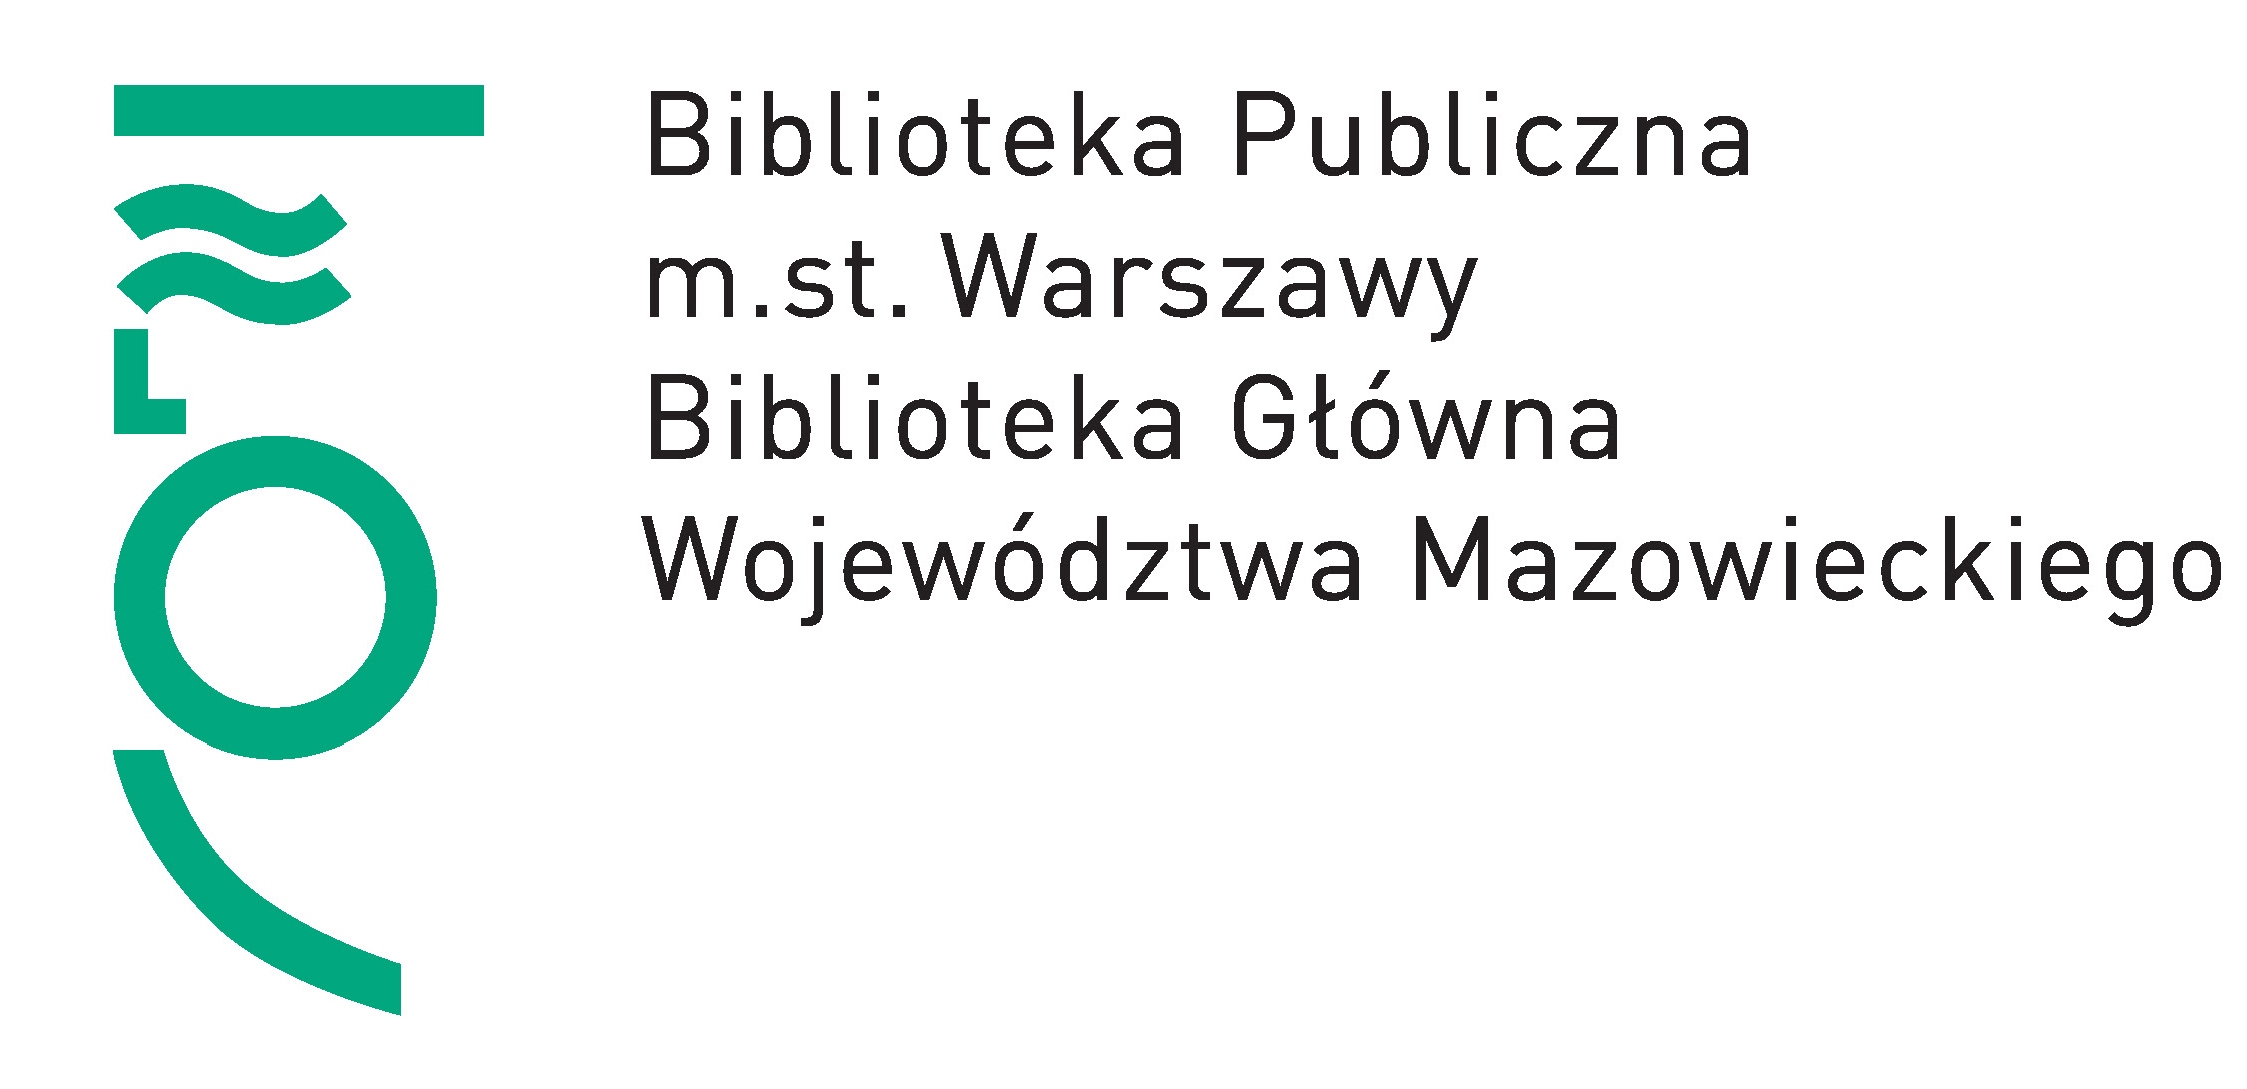 Katalog biblioteki wojewódzkiej